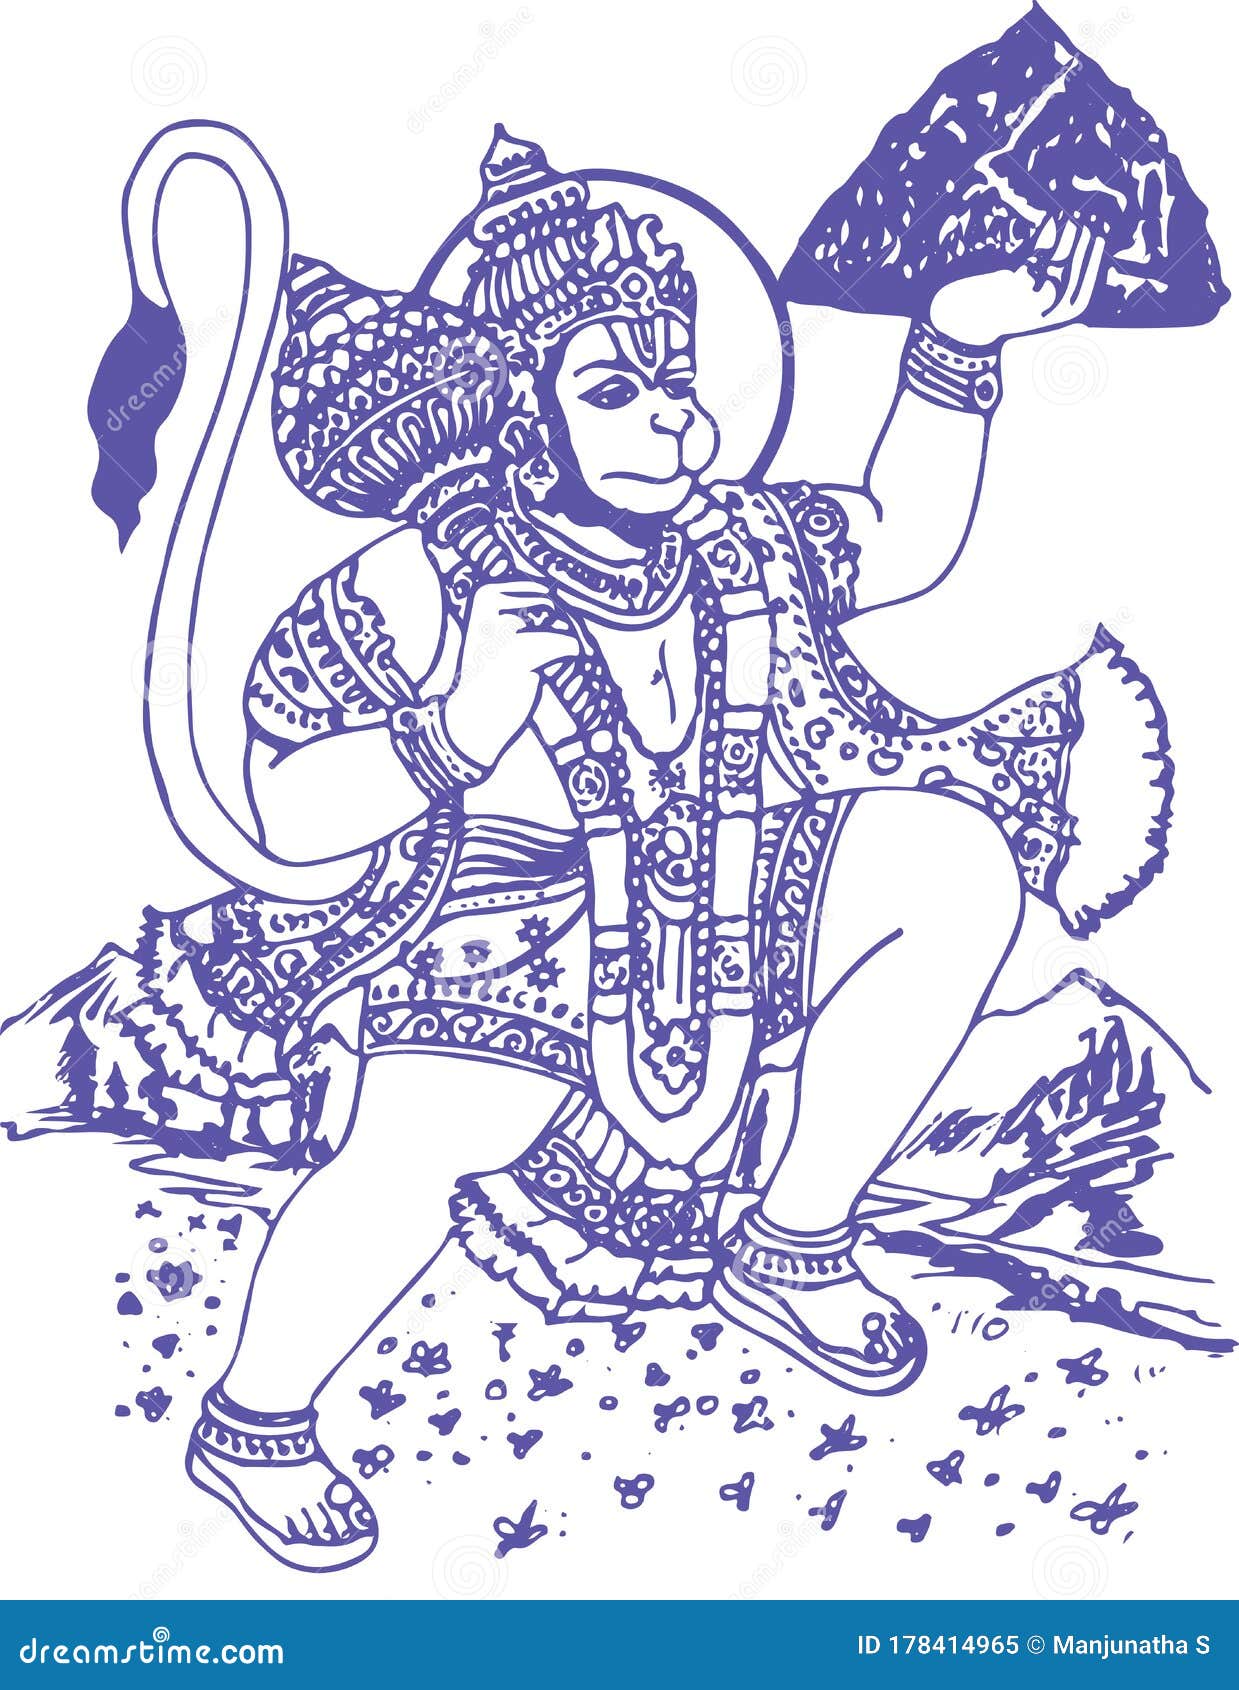 Hanuman ji drawing art | Indian art paintings, Art drawings, Drawings-sonxechinhhang.vn